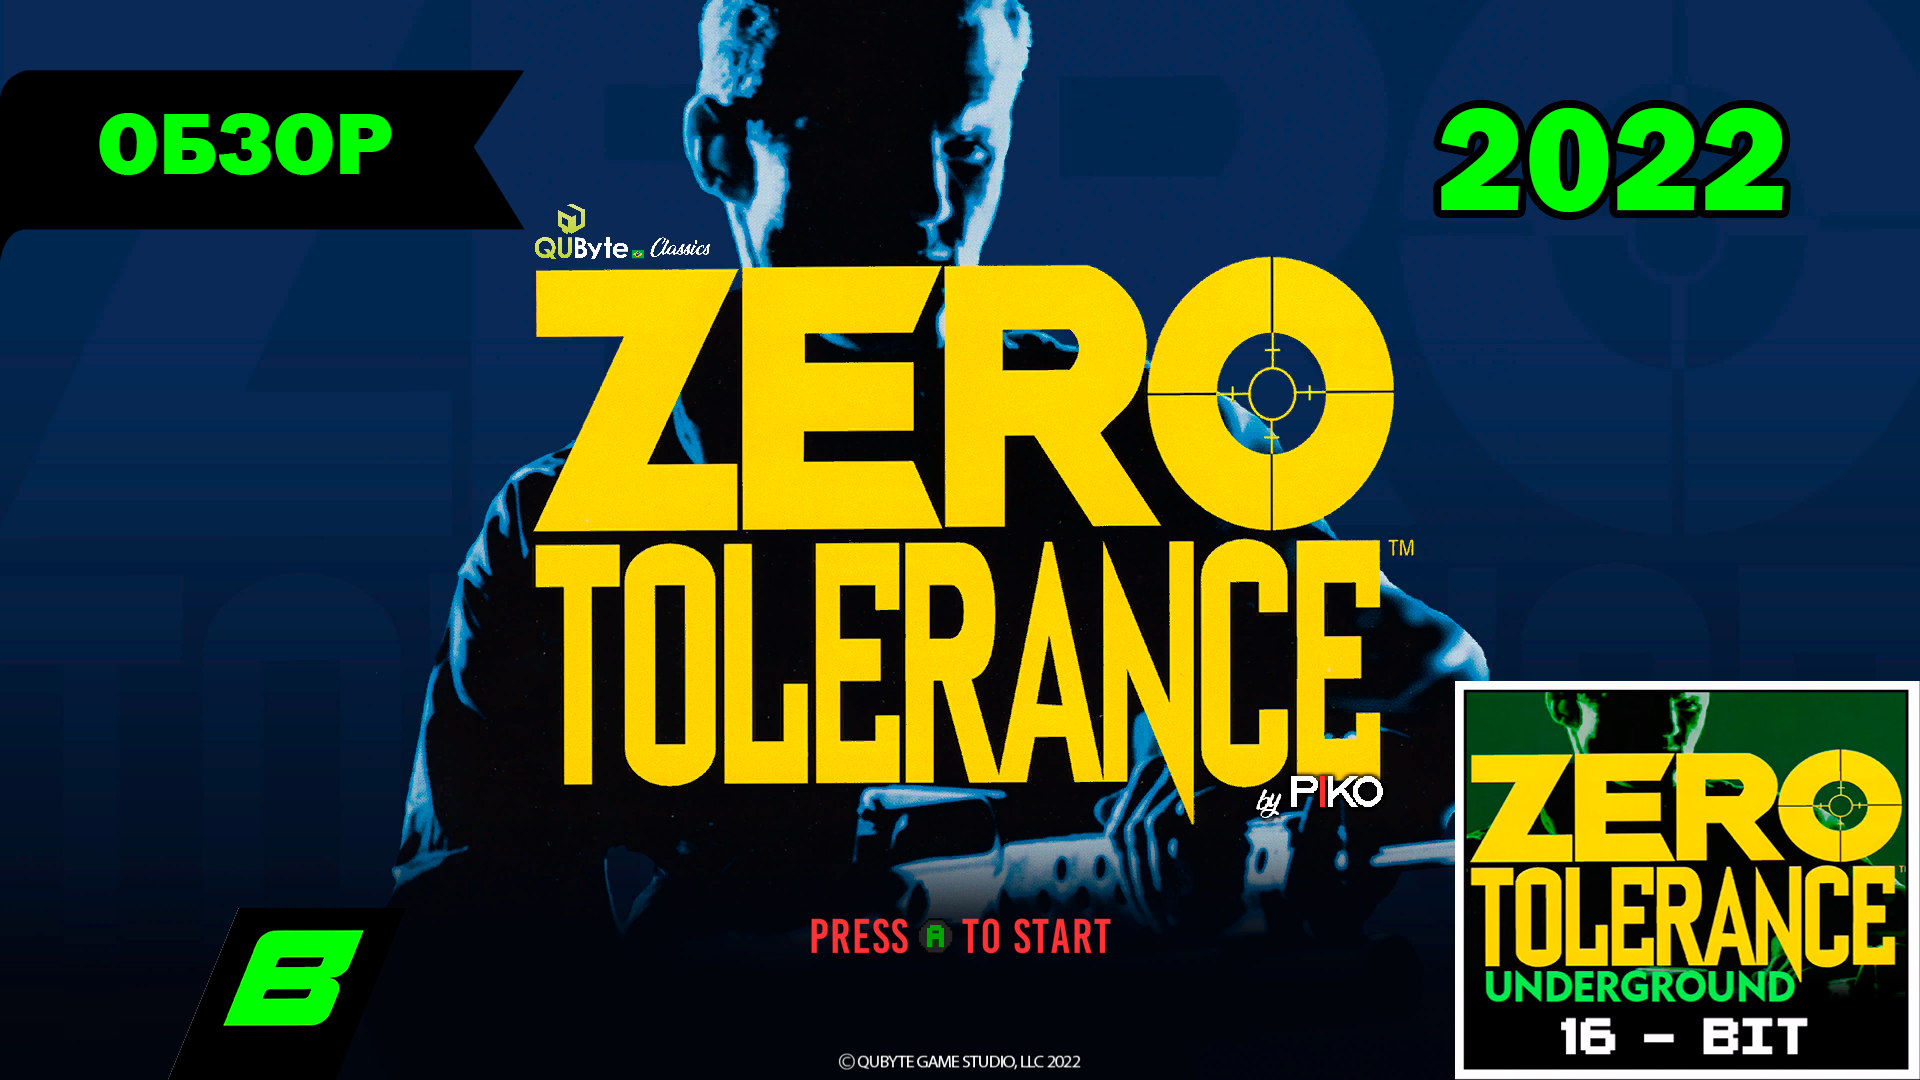 Beyond Zero tolerance. Zero tolerance collection. Zero tolerance (игра). Zero tolerance collection ps4.